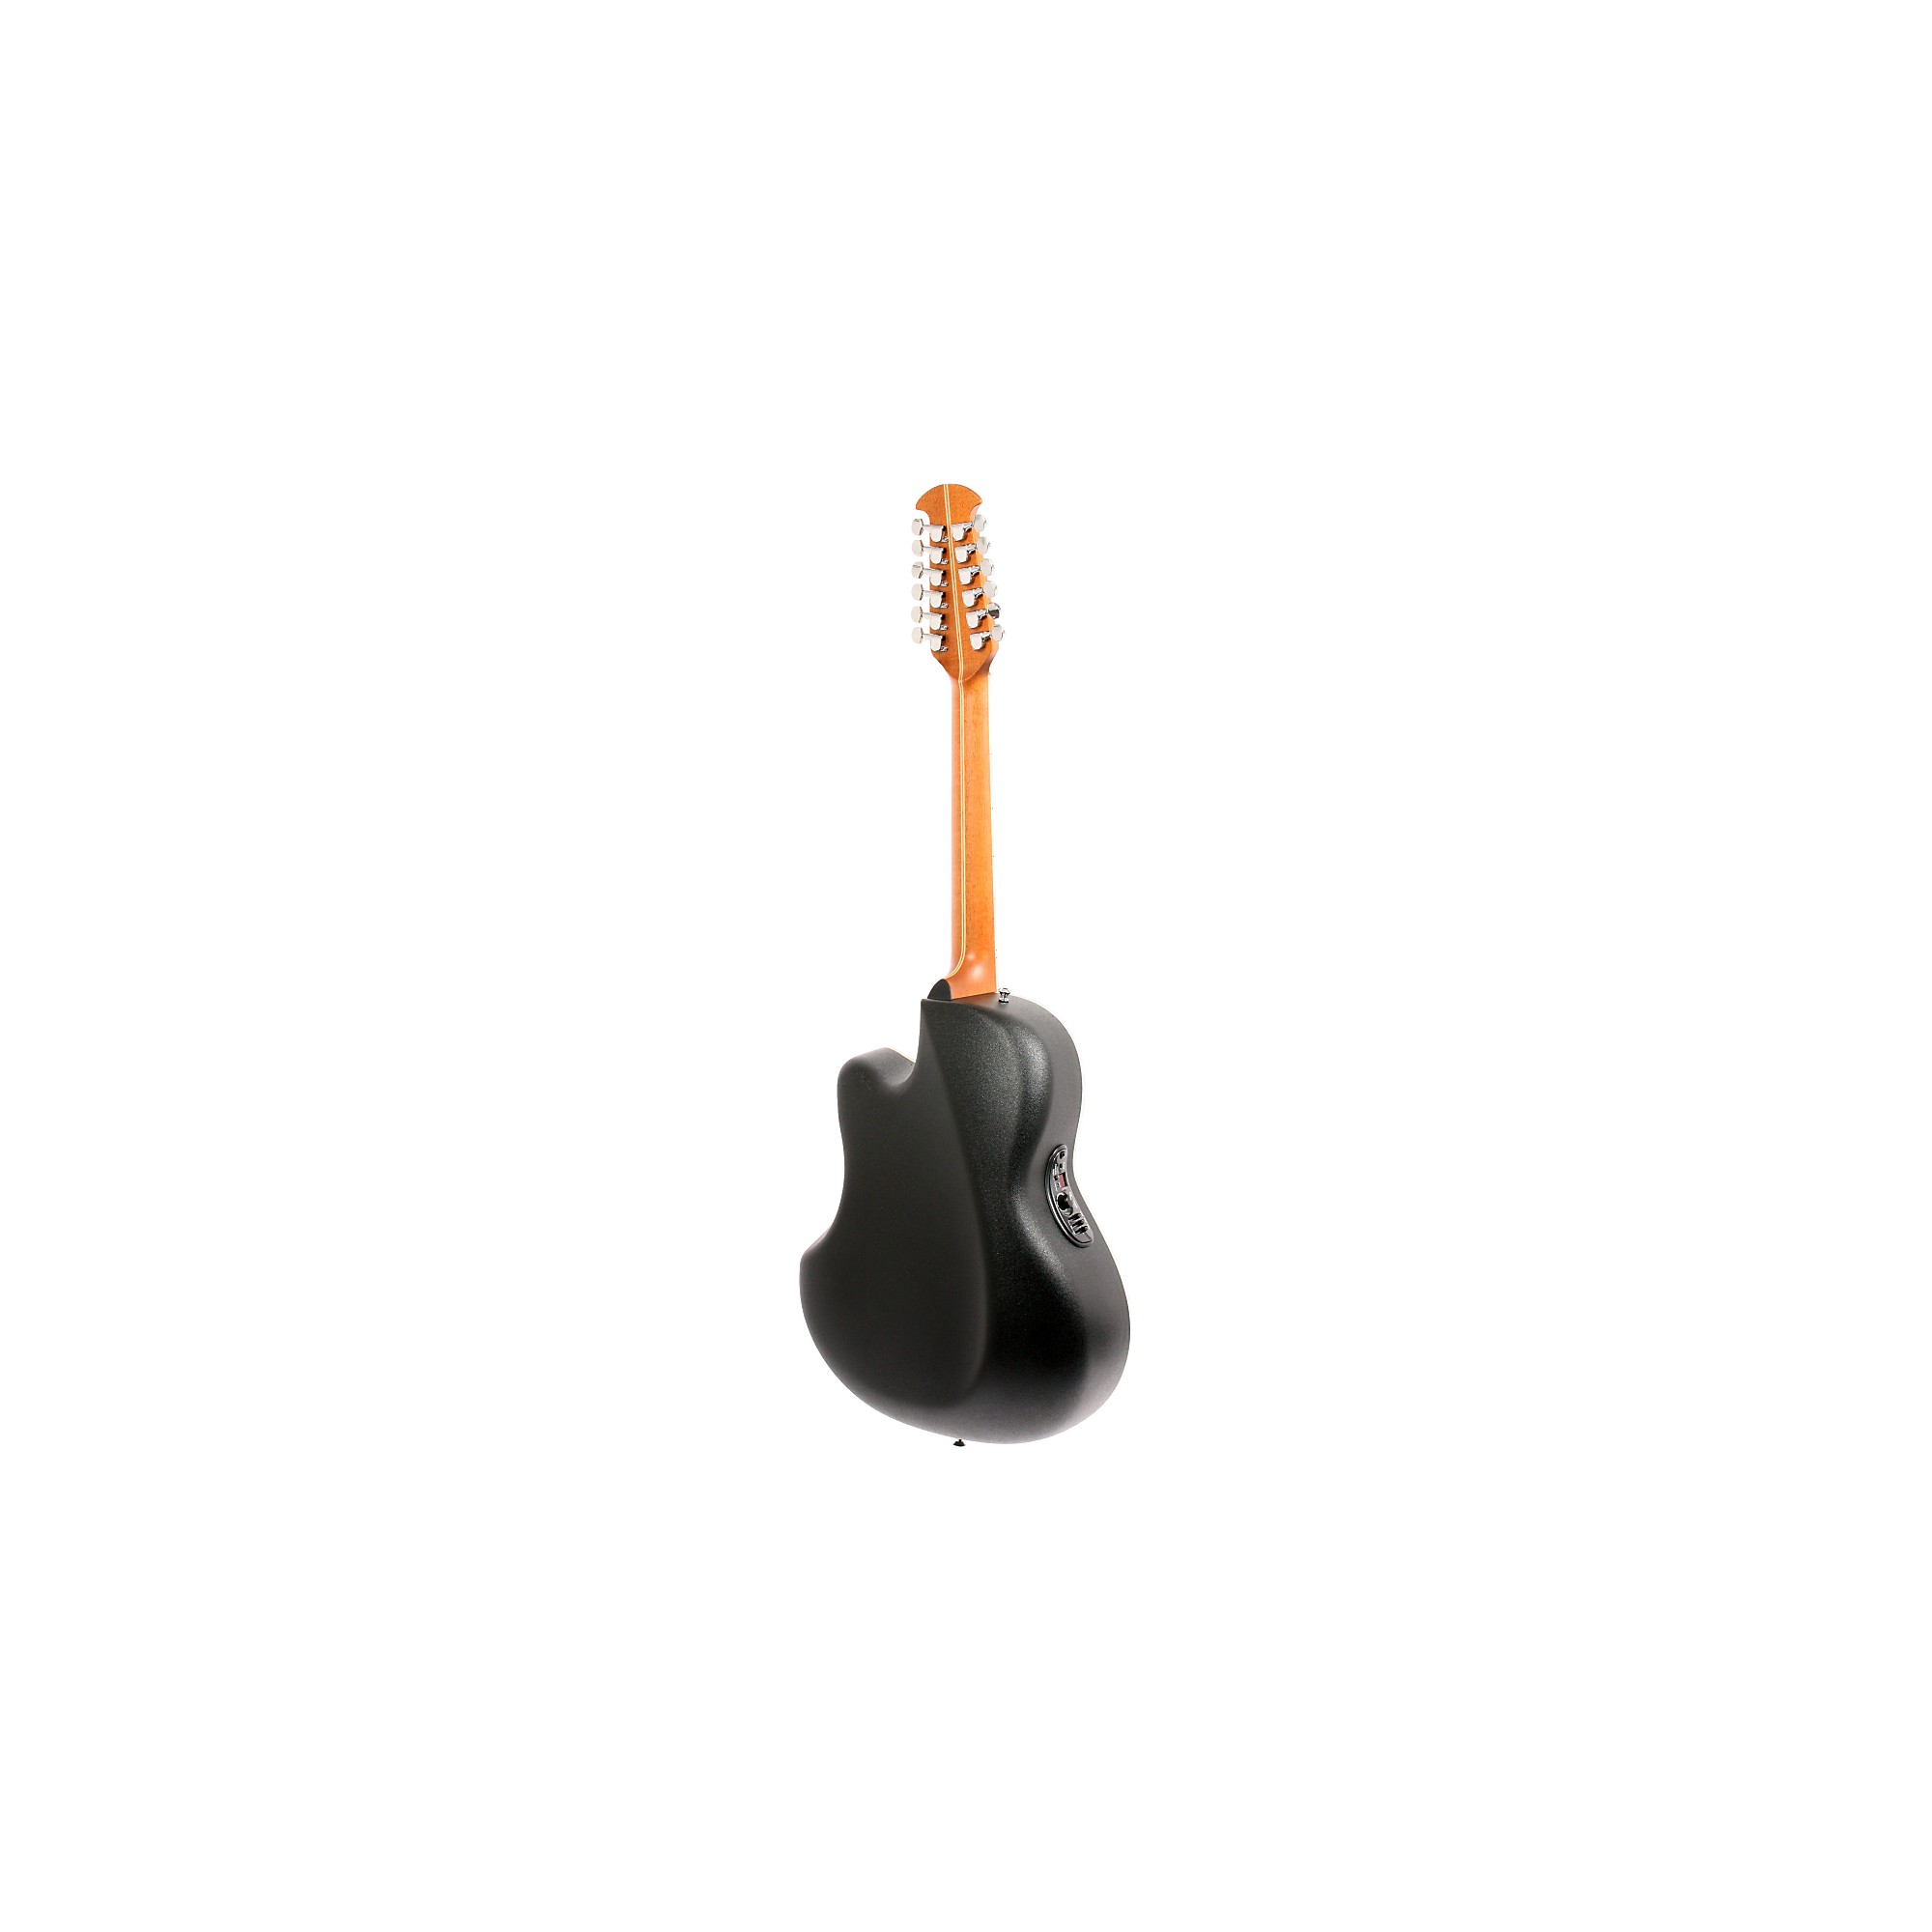 Ovation Standard Balladeer 2751 AX 12-струнная акусто-электрическая гитара, черная ovation 2751ax 5 standard balladeer® электроакустическая 12 струнная гитара